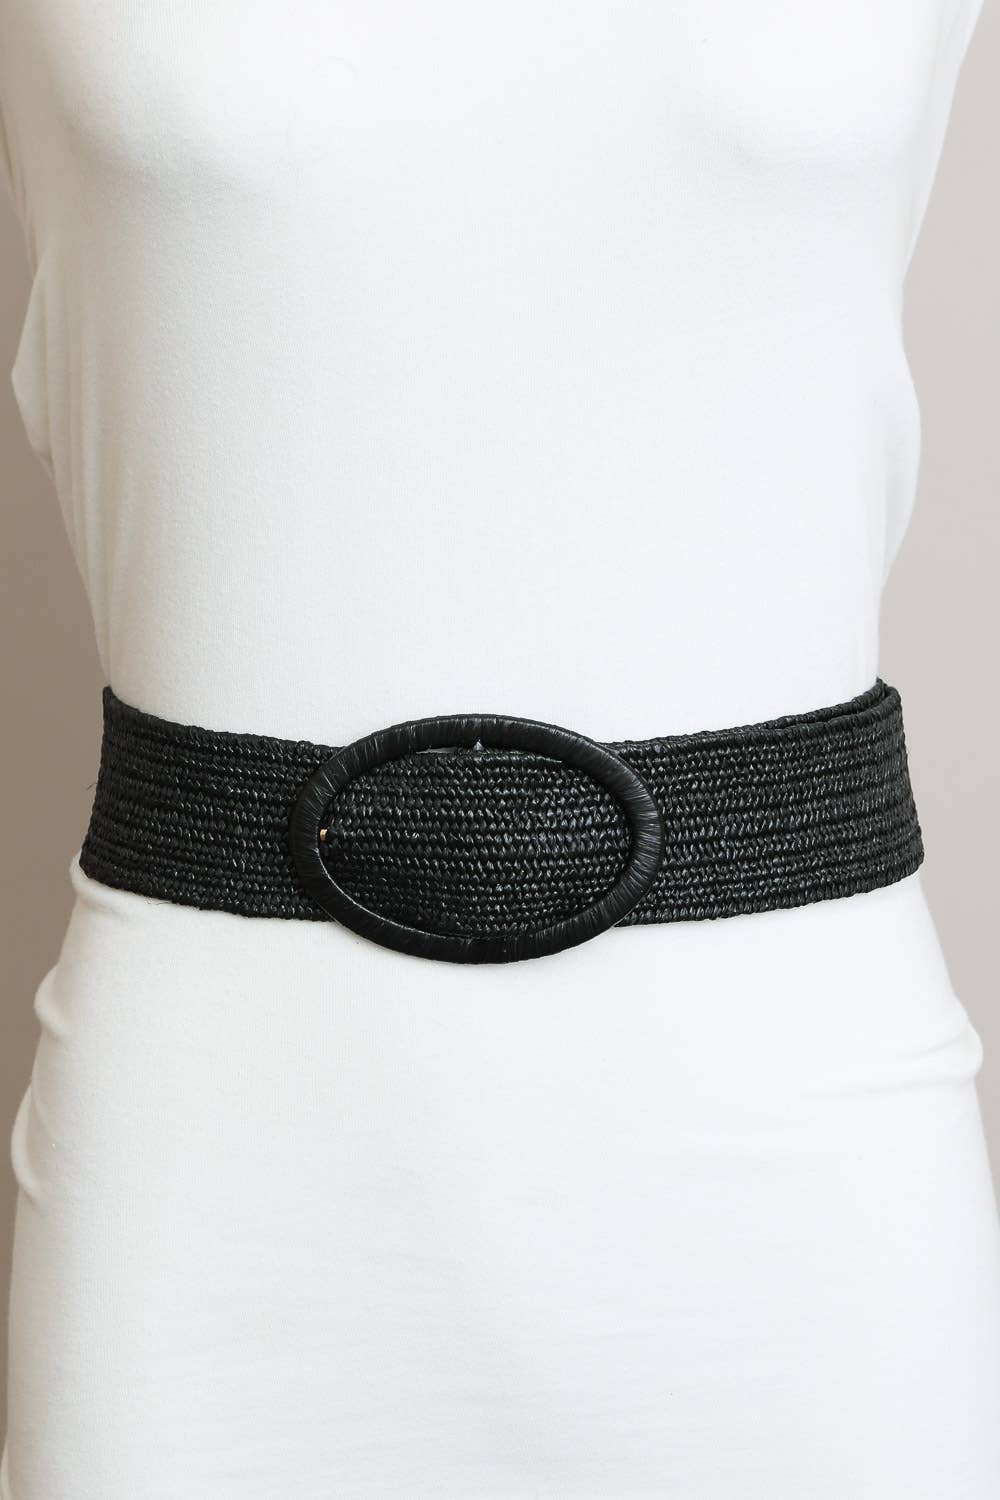 Raffia Oval Buckle Belt - Whimsical Details